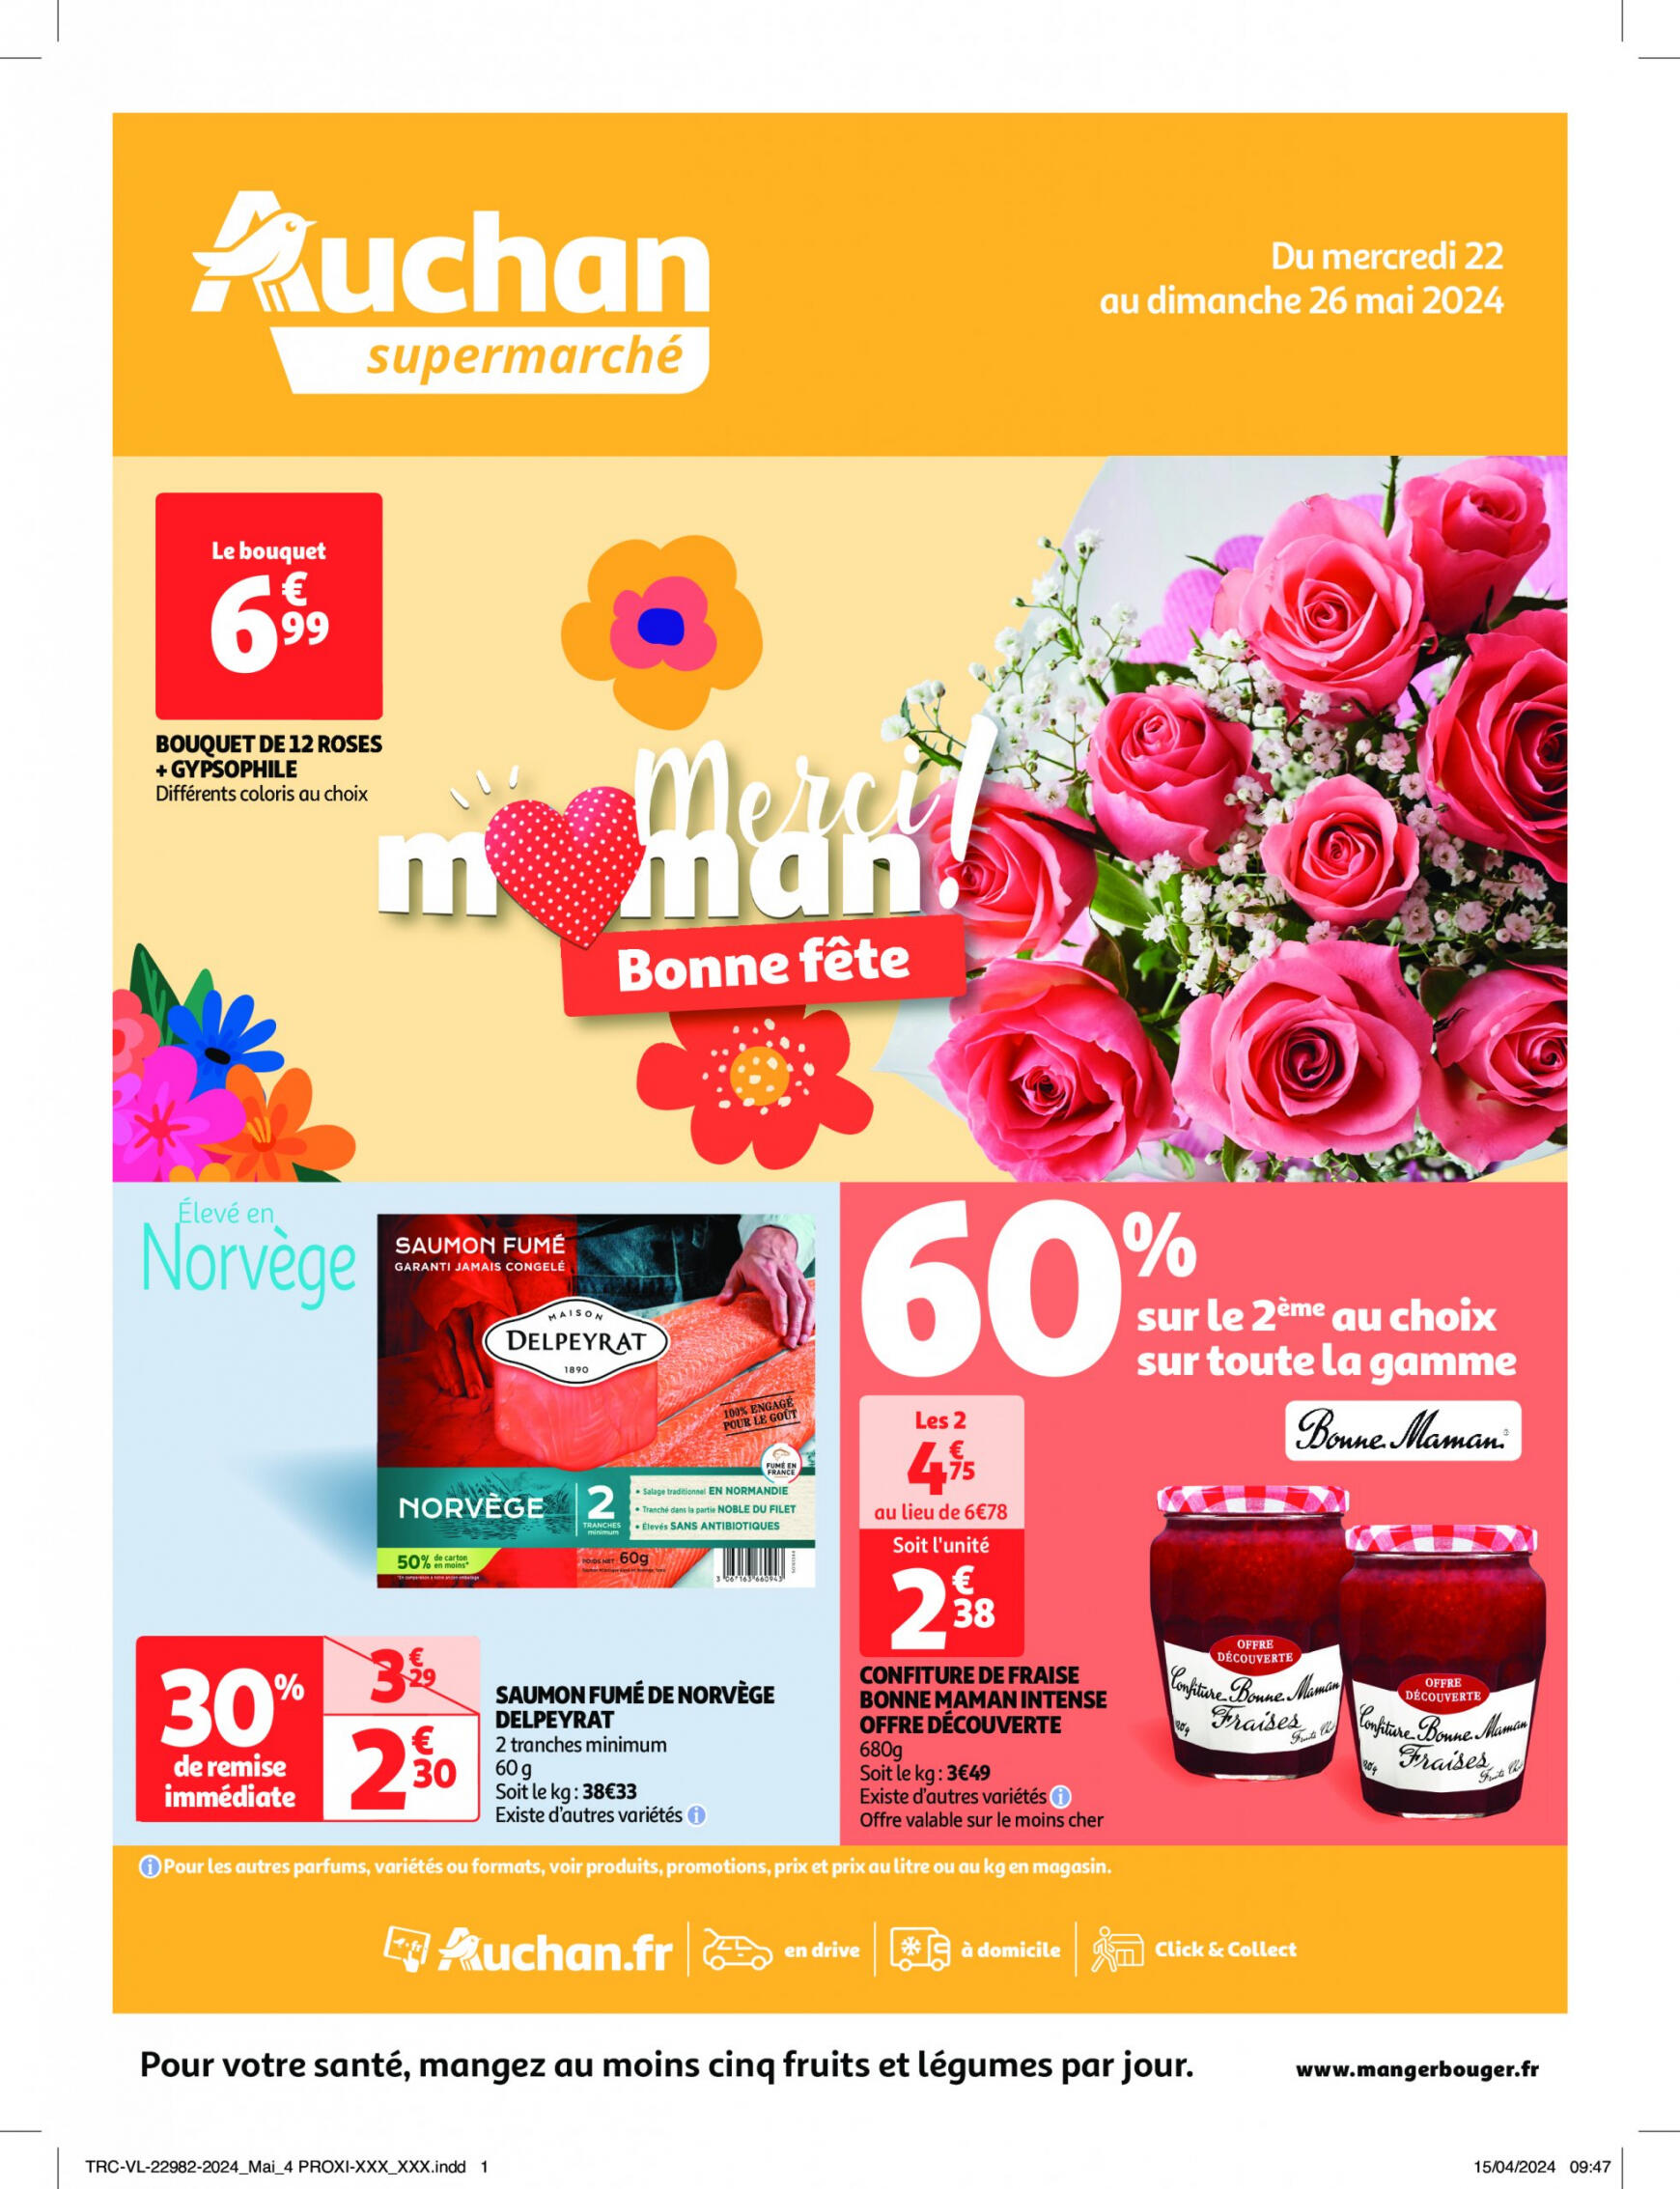 auchan - Auchan supermarché - Faites le plein de bonnes affaires folder huidig 22.05. - 26.05. - page: 1